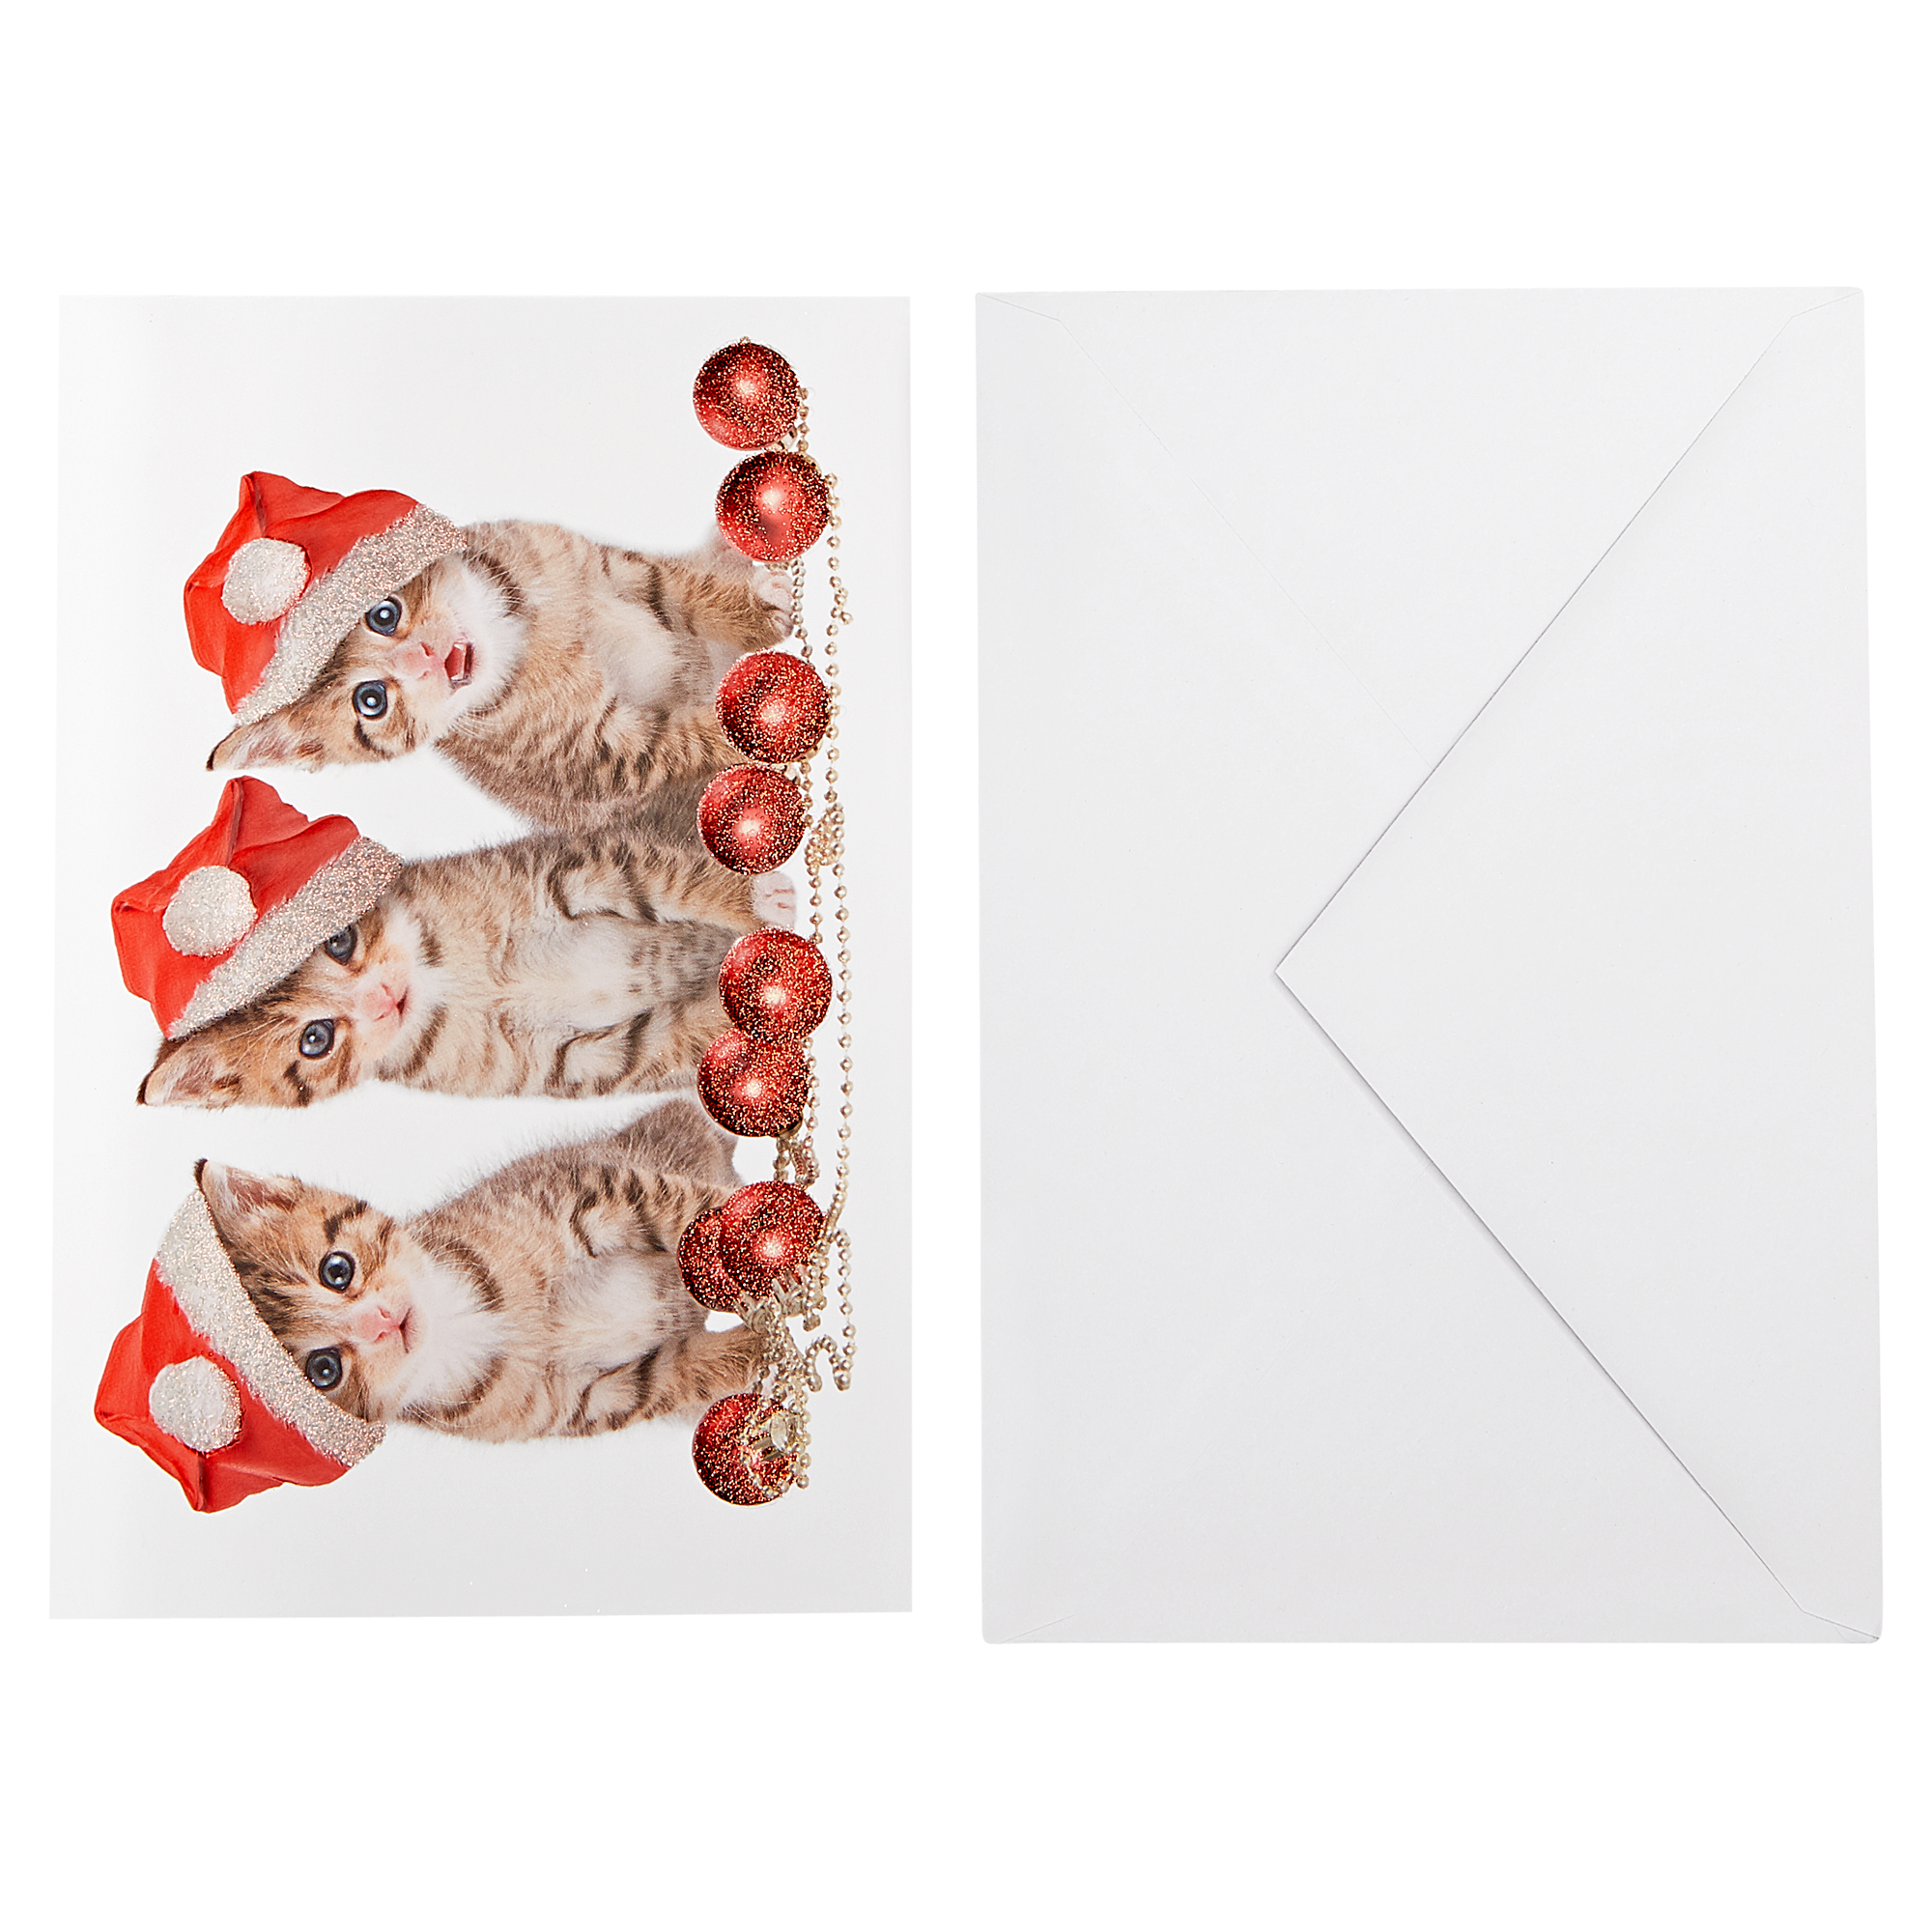 Weihnachtskarte blau/rot mit Umschlag + product picture